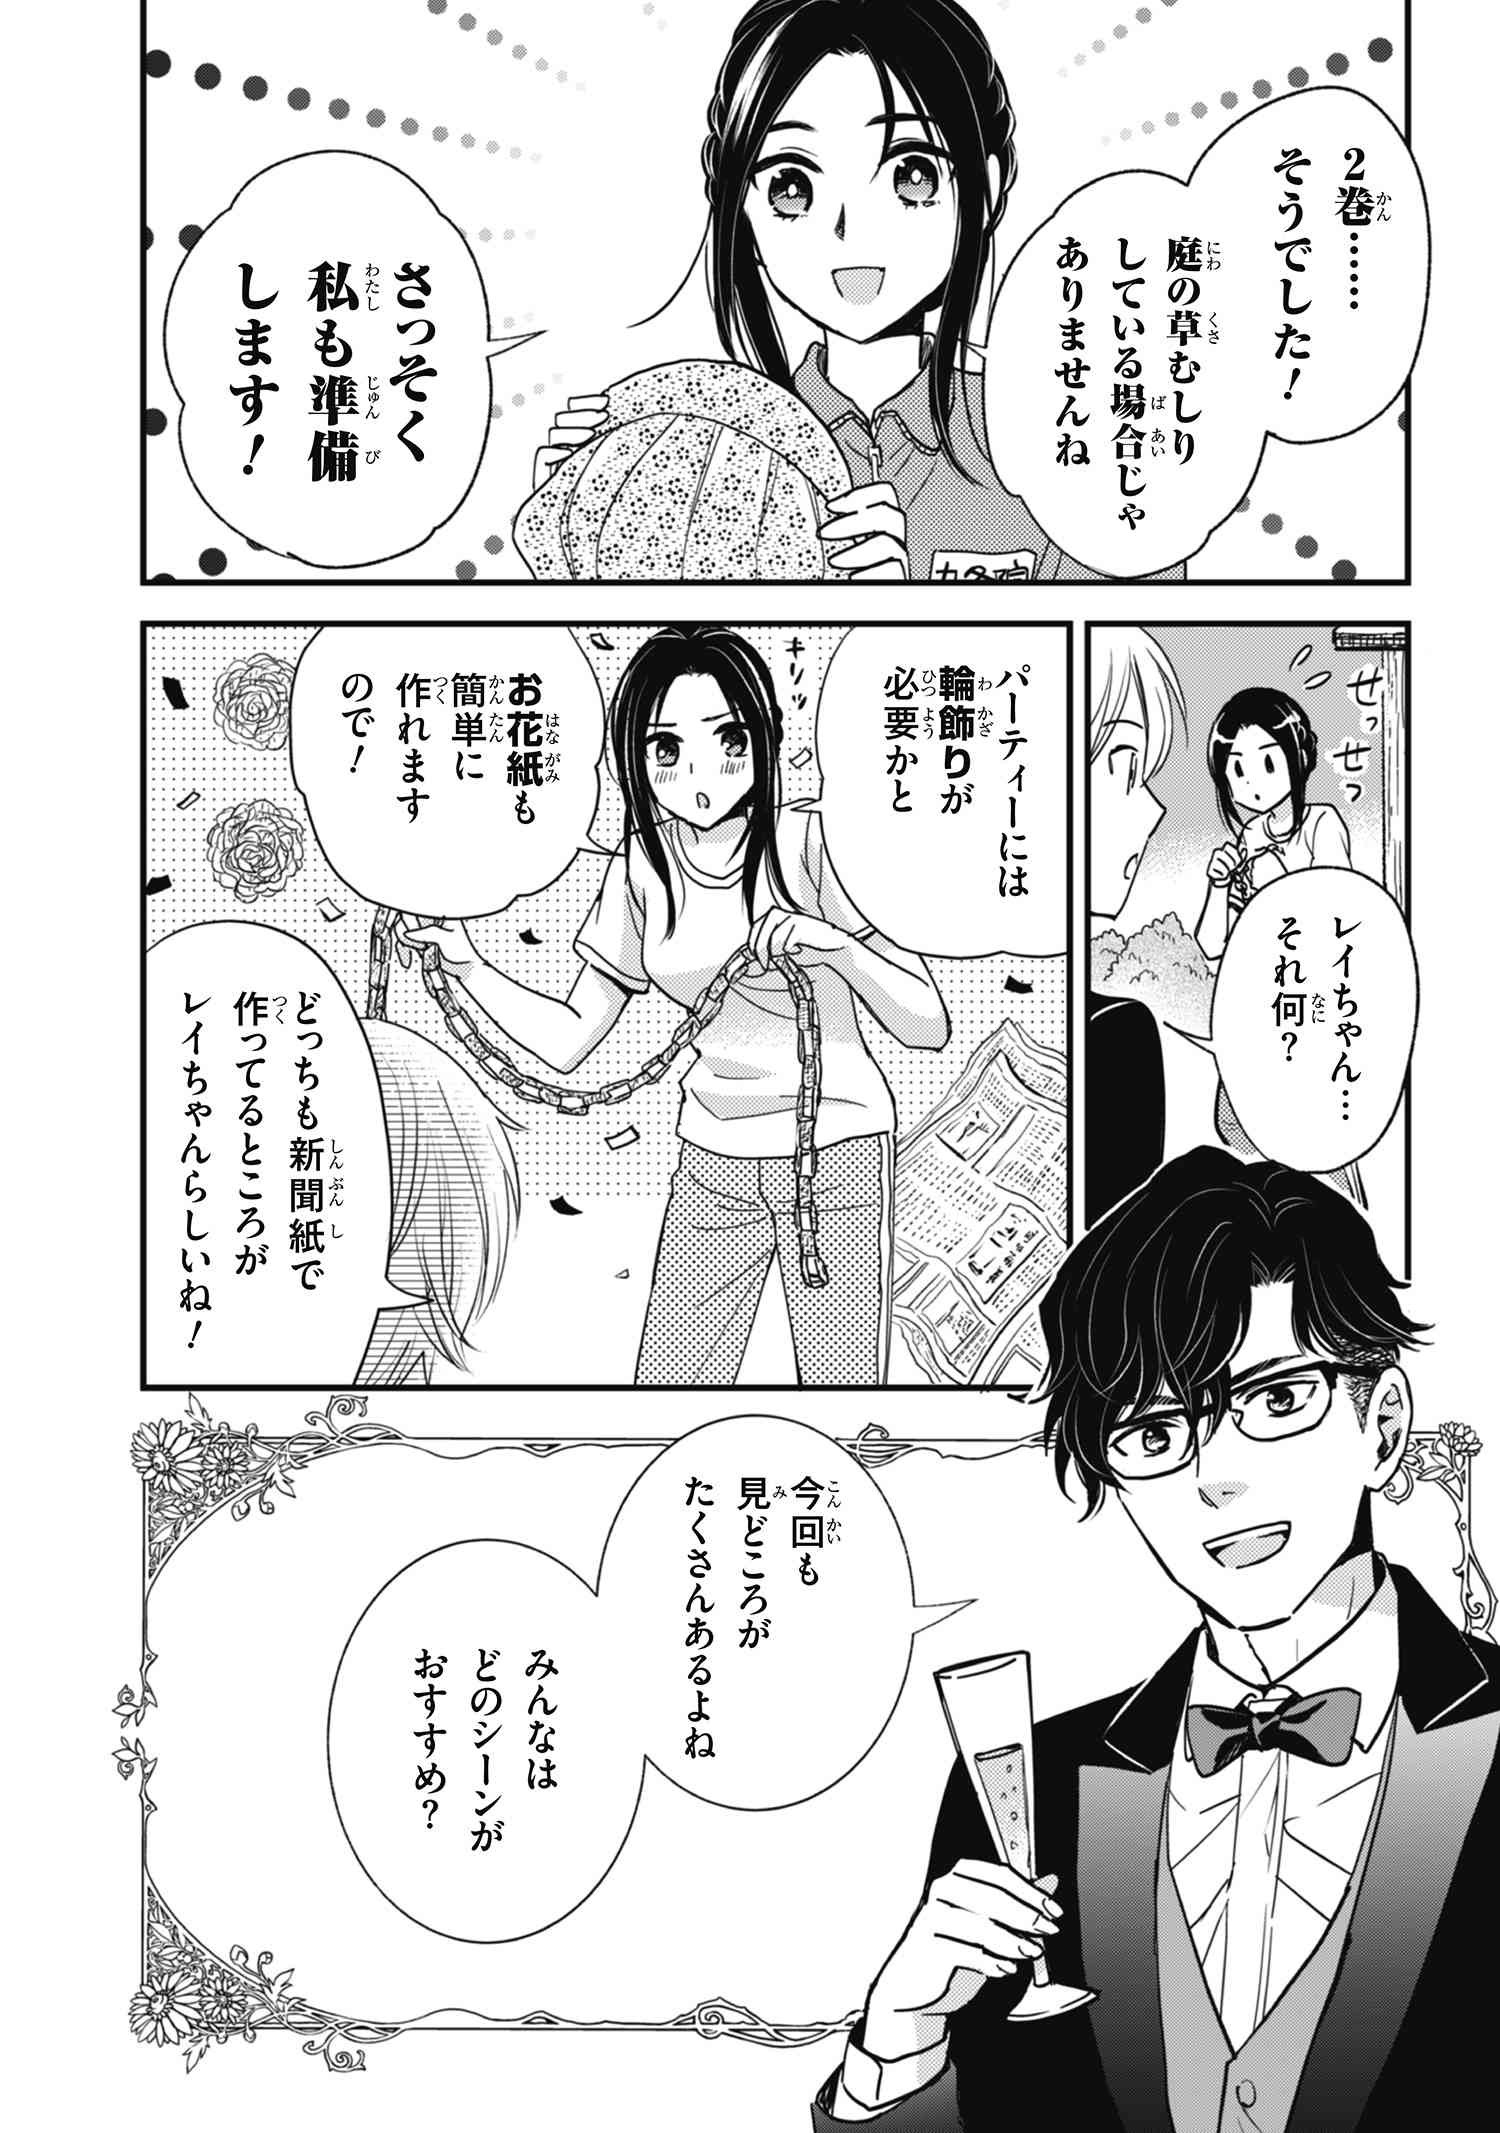 Reiko no Fuugi Akuyaku Reijou to Yobarete imasu ga, tada no Binbou Musume desu - Chapter 12.0 - Page 2